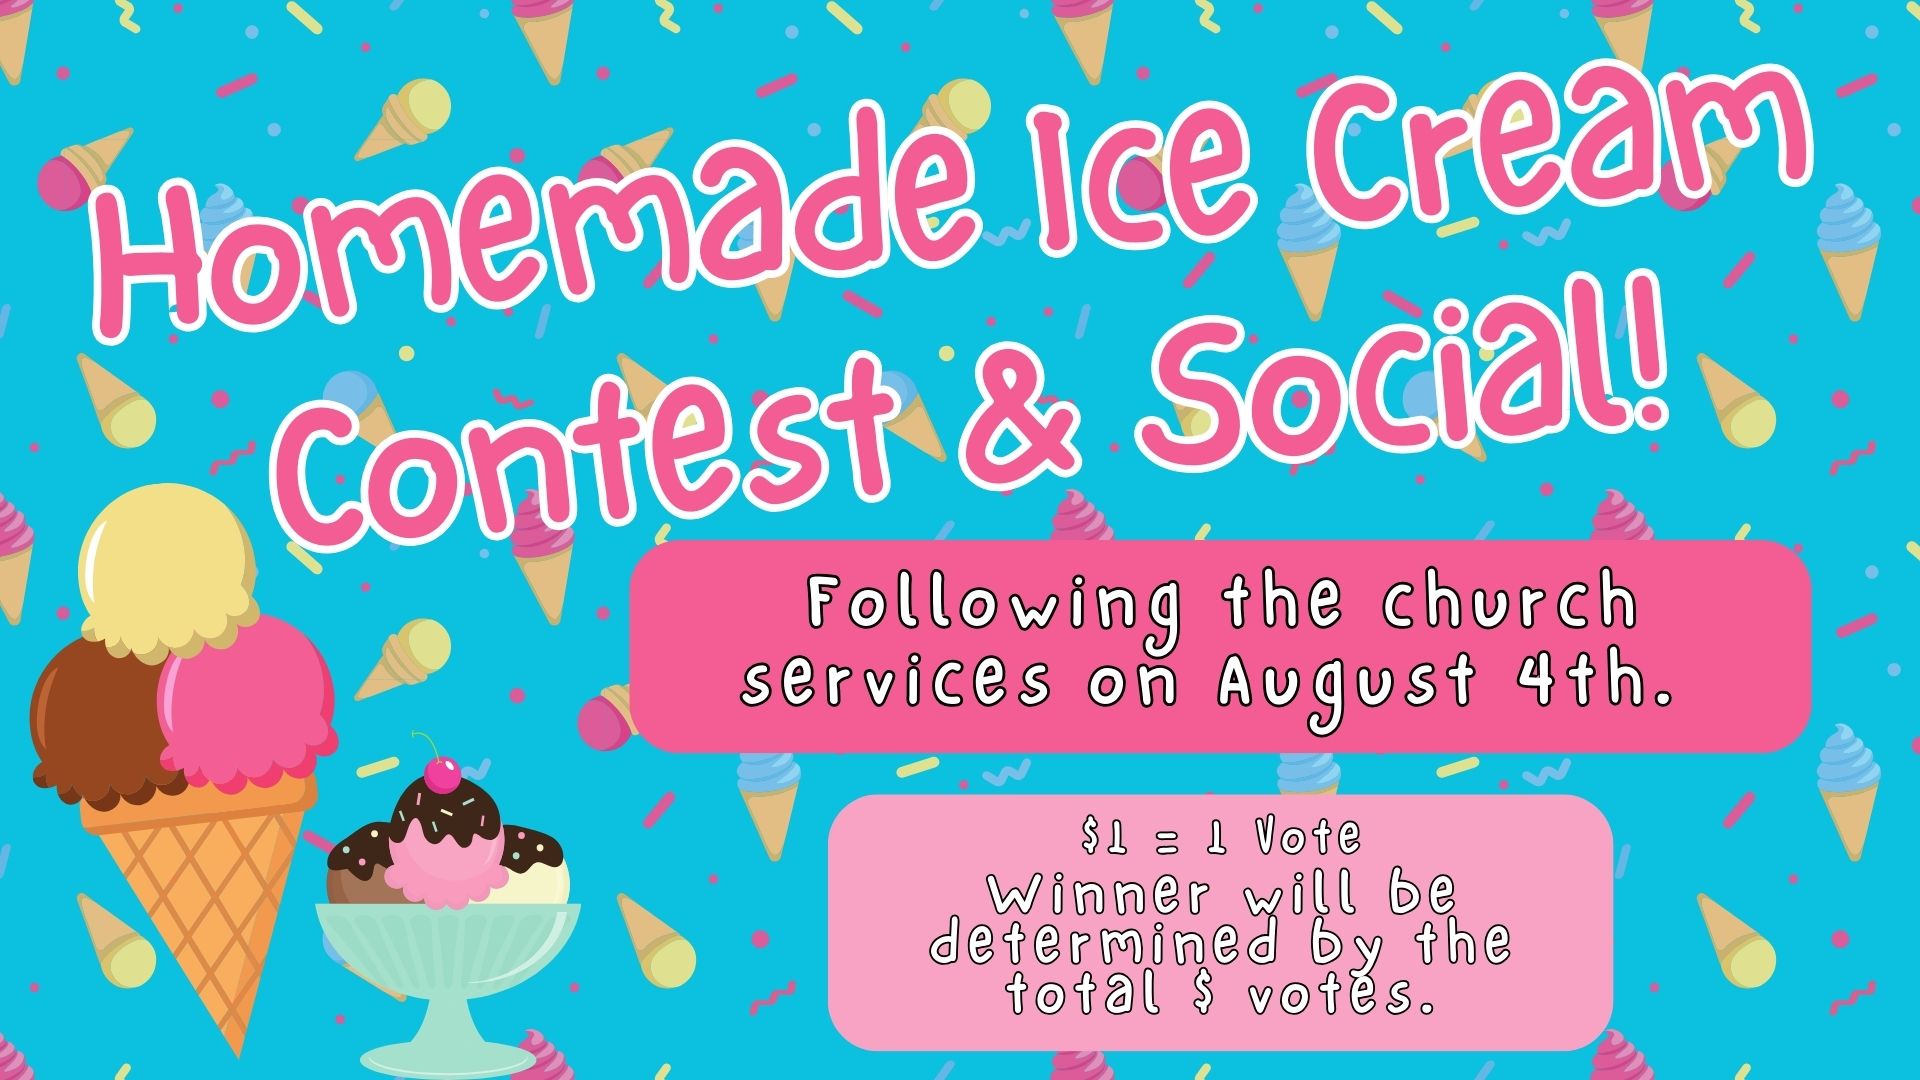 Annual Ice Cream Contest August 4th